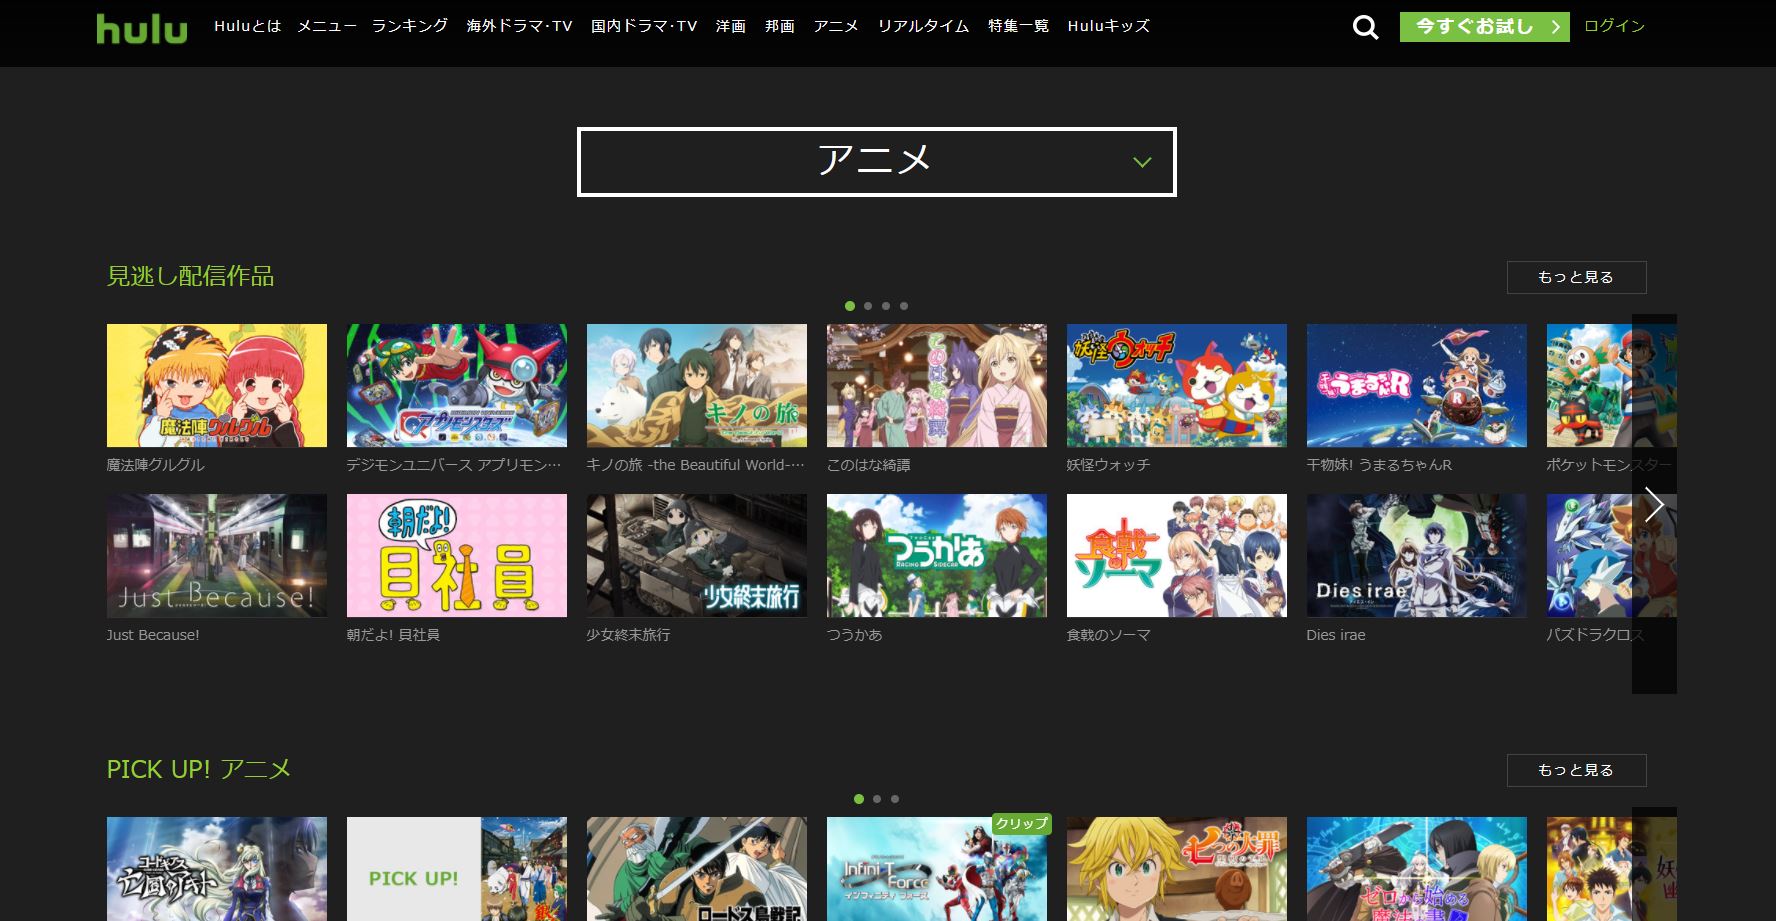 大人気アニメ作品も見放題 Huluで観ることができる人気のアニメ作品9選